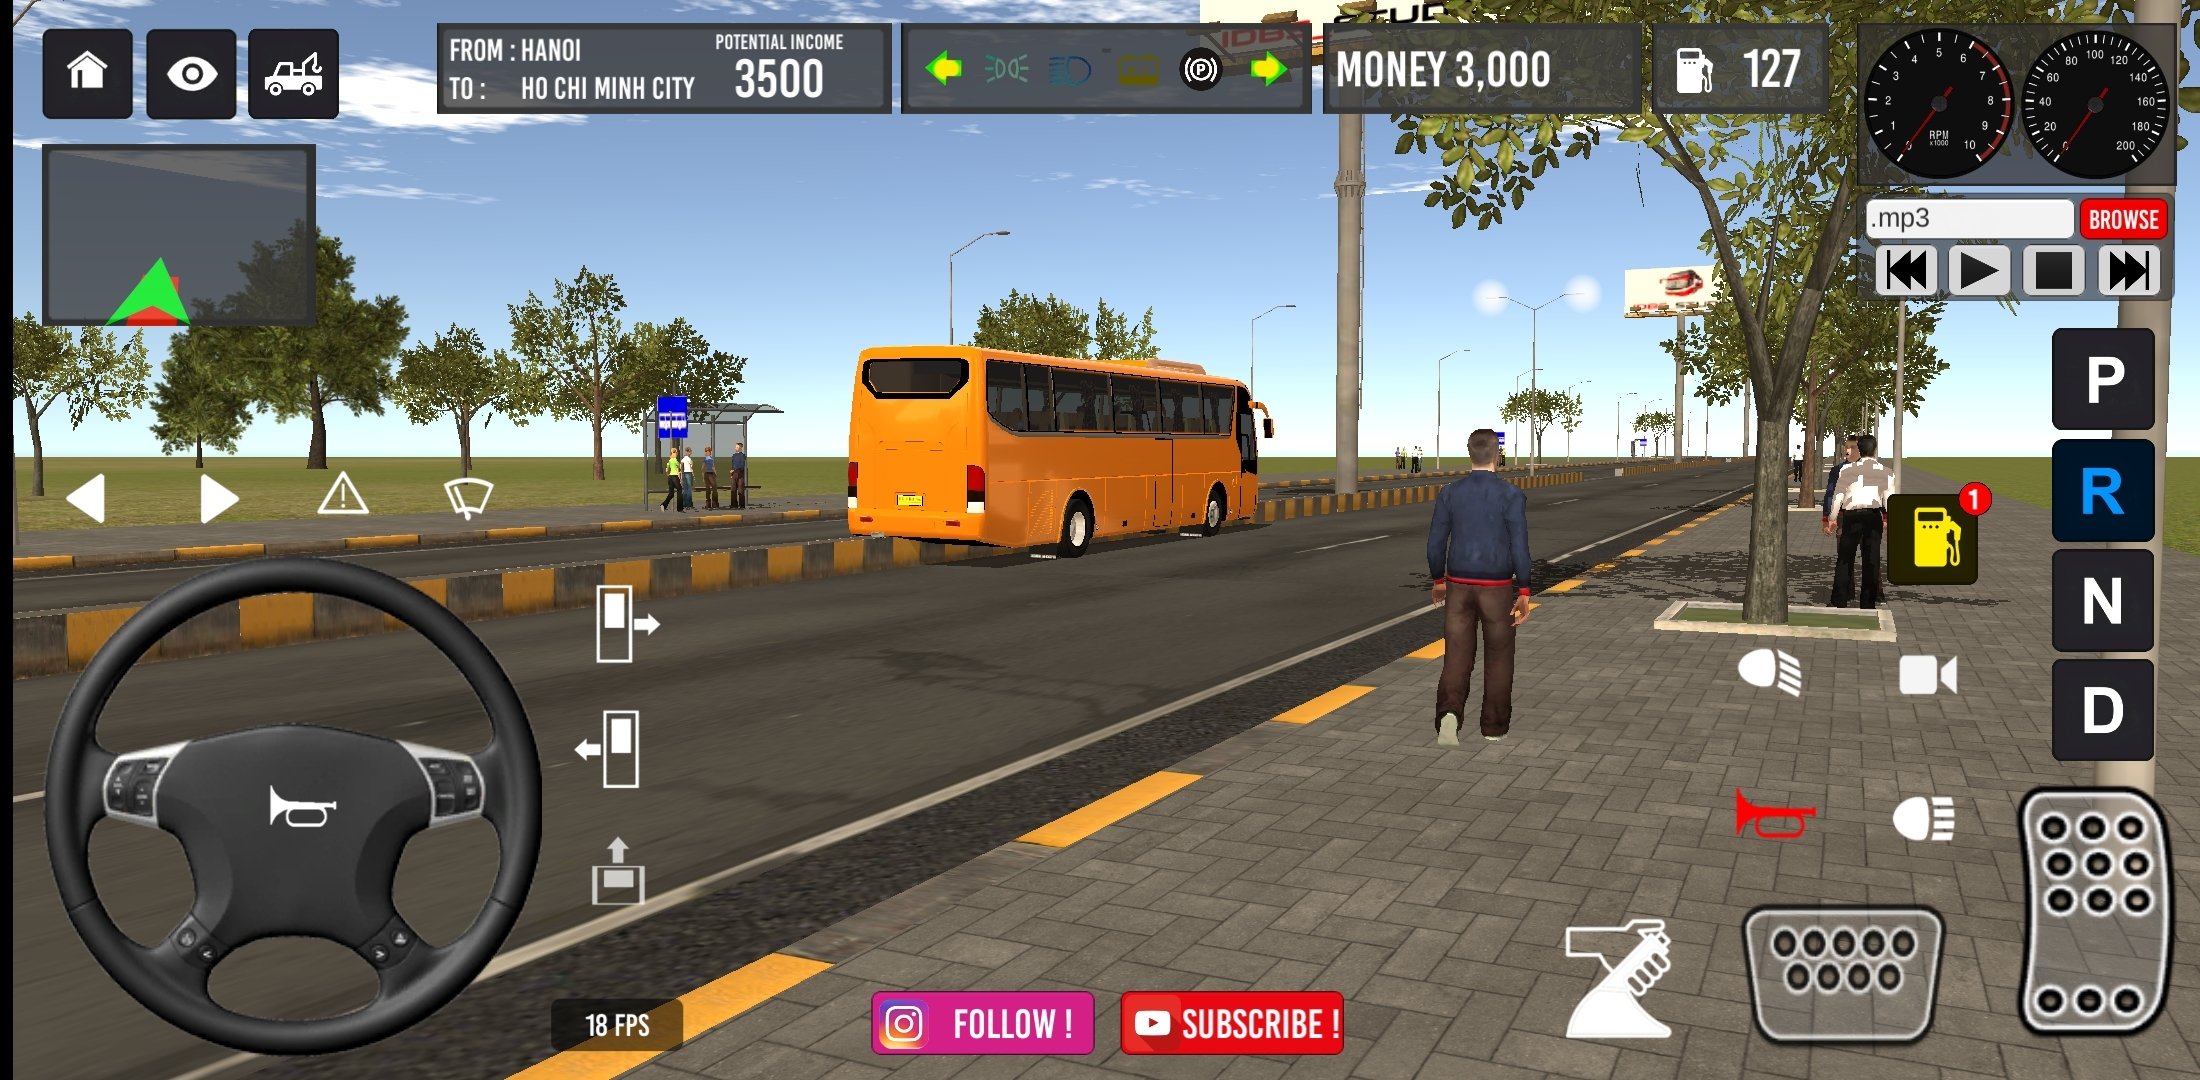 minibus simulator vietnam free download apk